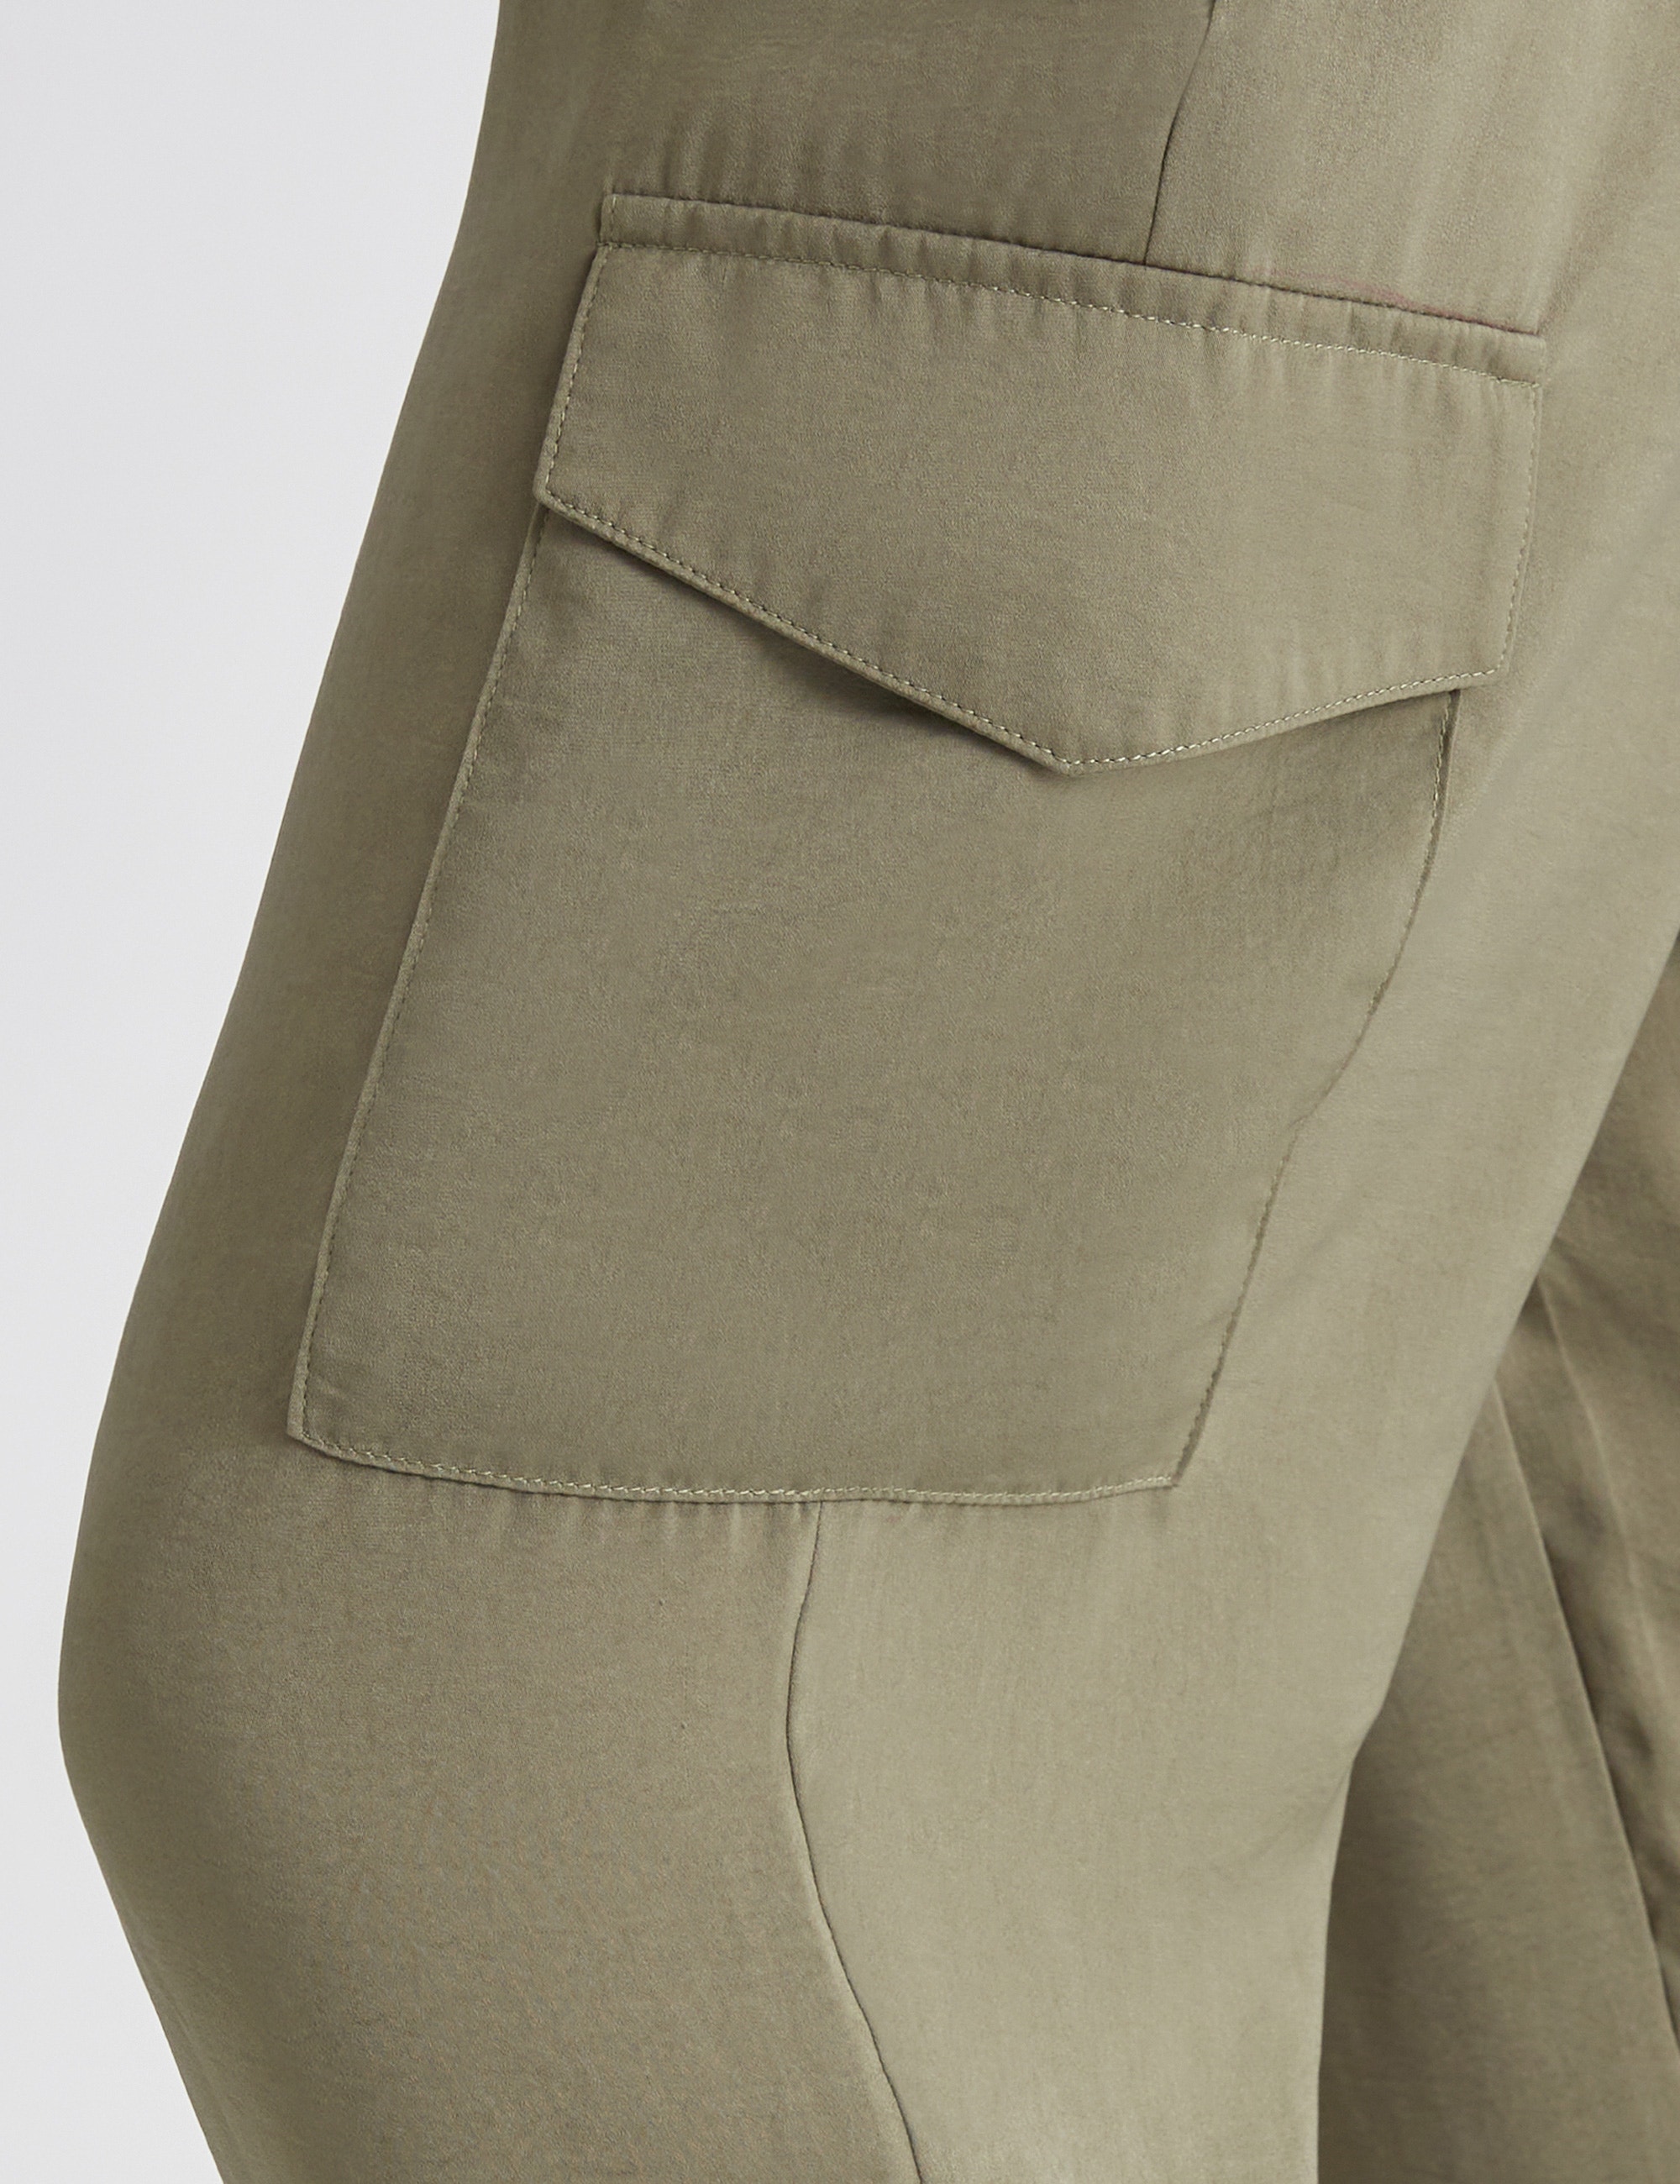 Green Cargo Pants - Women's Winter Styles